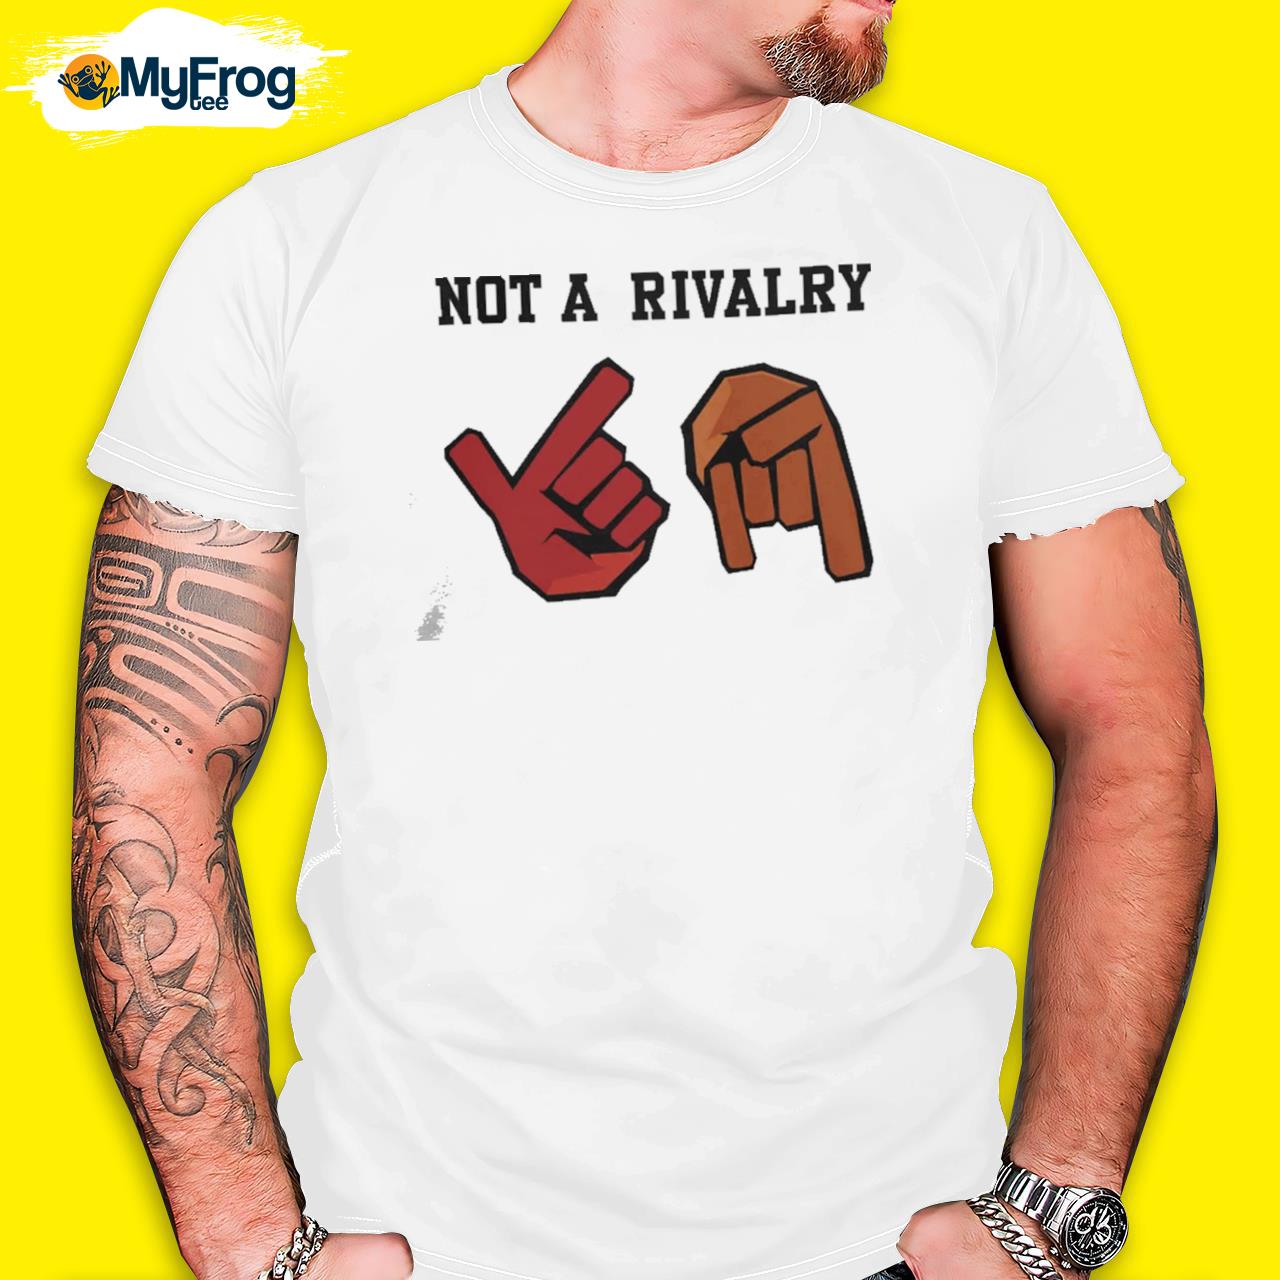 Not a rivalry shirt